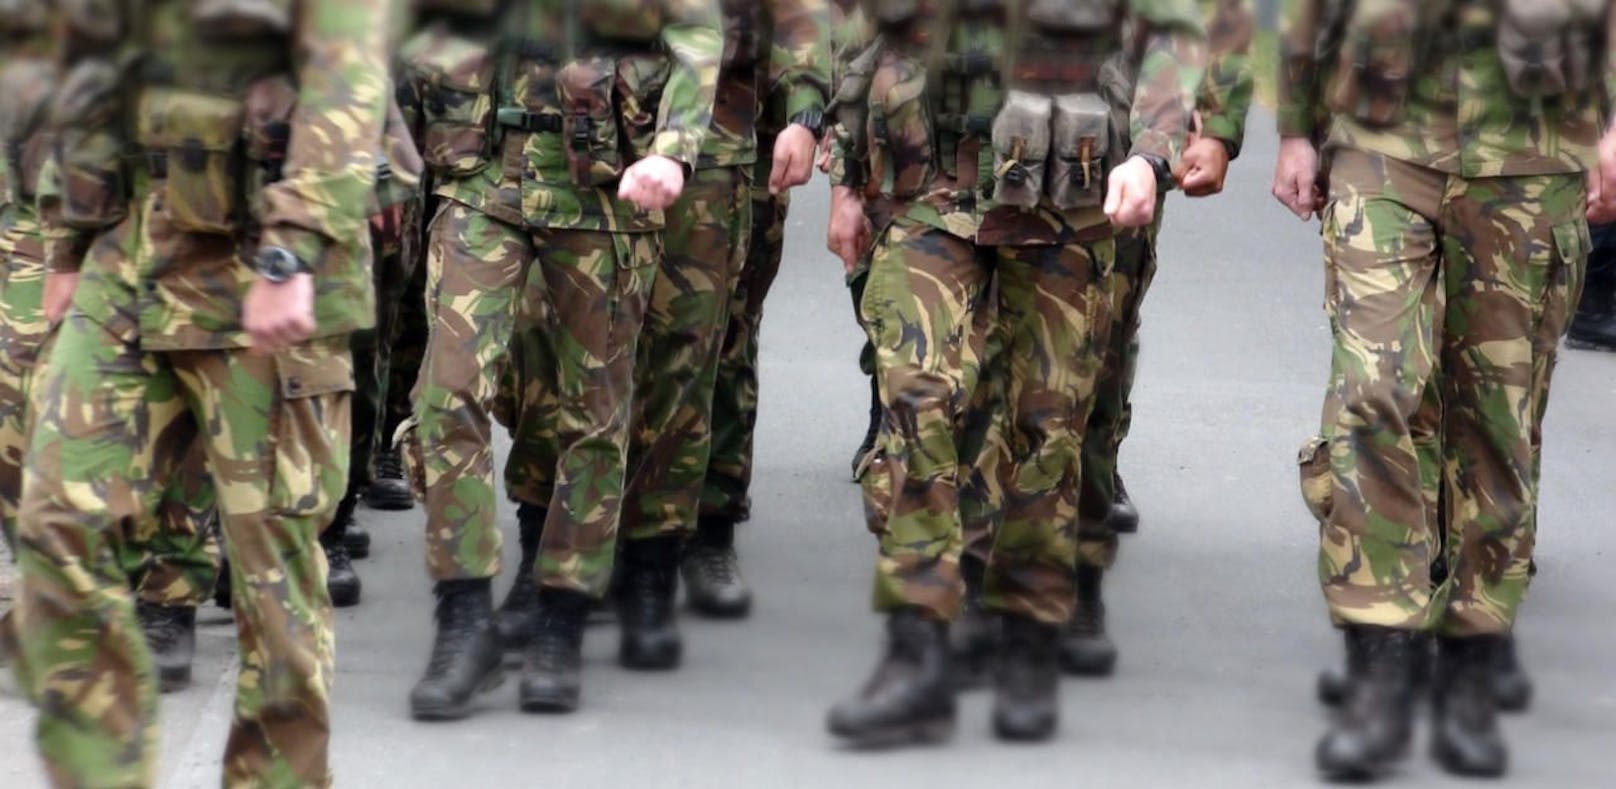 Die niederländische Armee wird von einem Missbrauchsskandal überschattet.